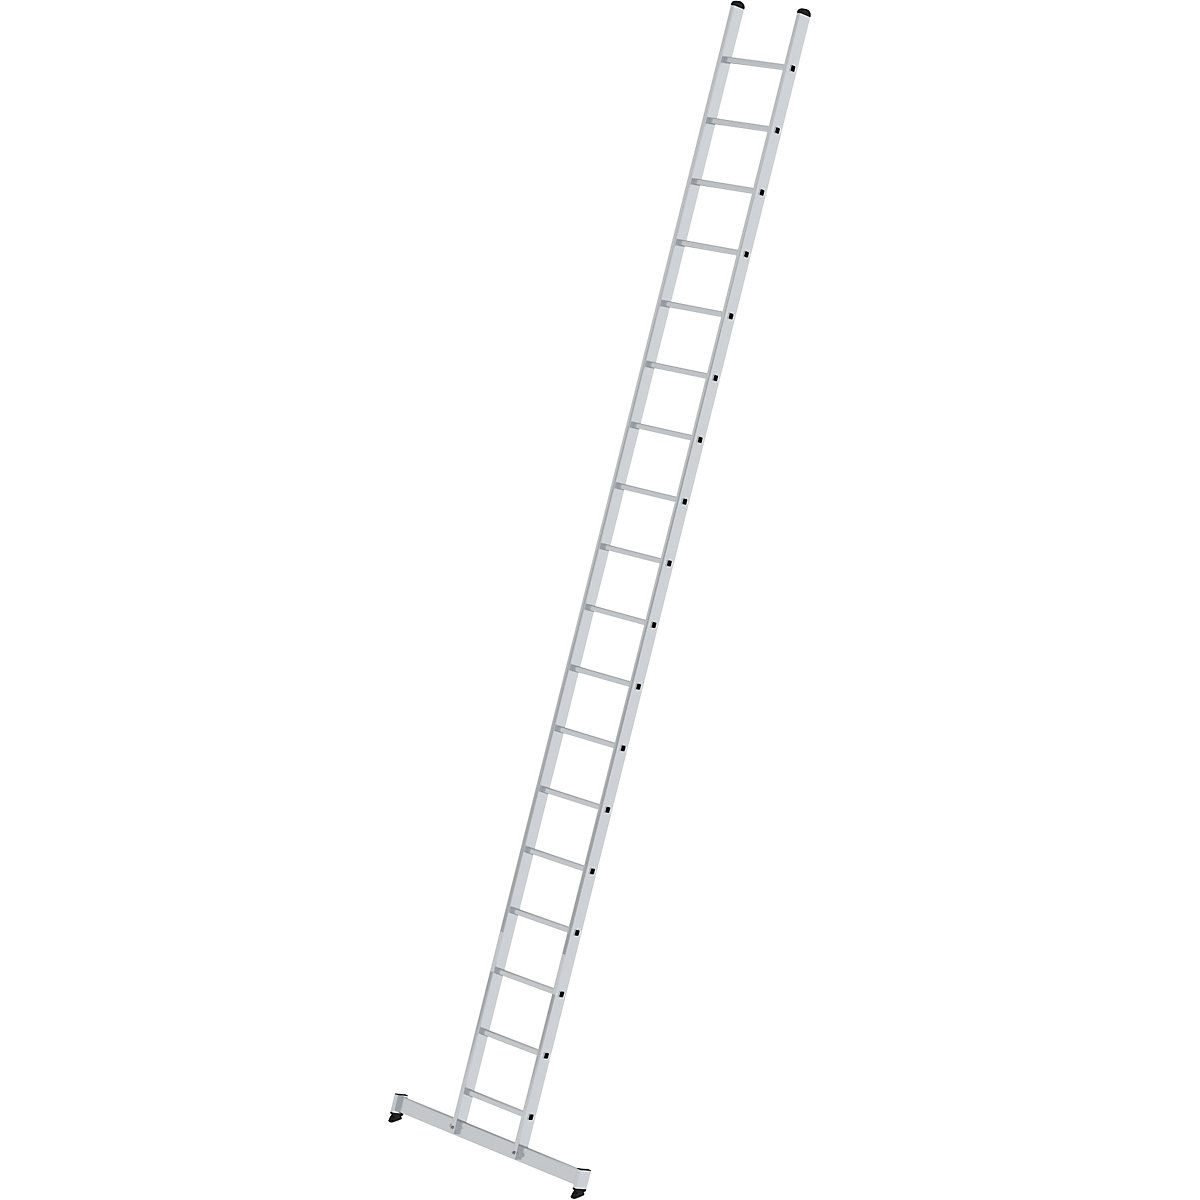 Príložný rebrík s priečkami – MUNK, profesionálne vyhotovenie, šírka 420 mm, 18 priečok, s priečnikom nivello®-8